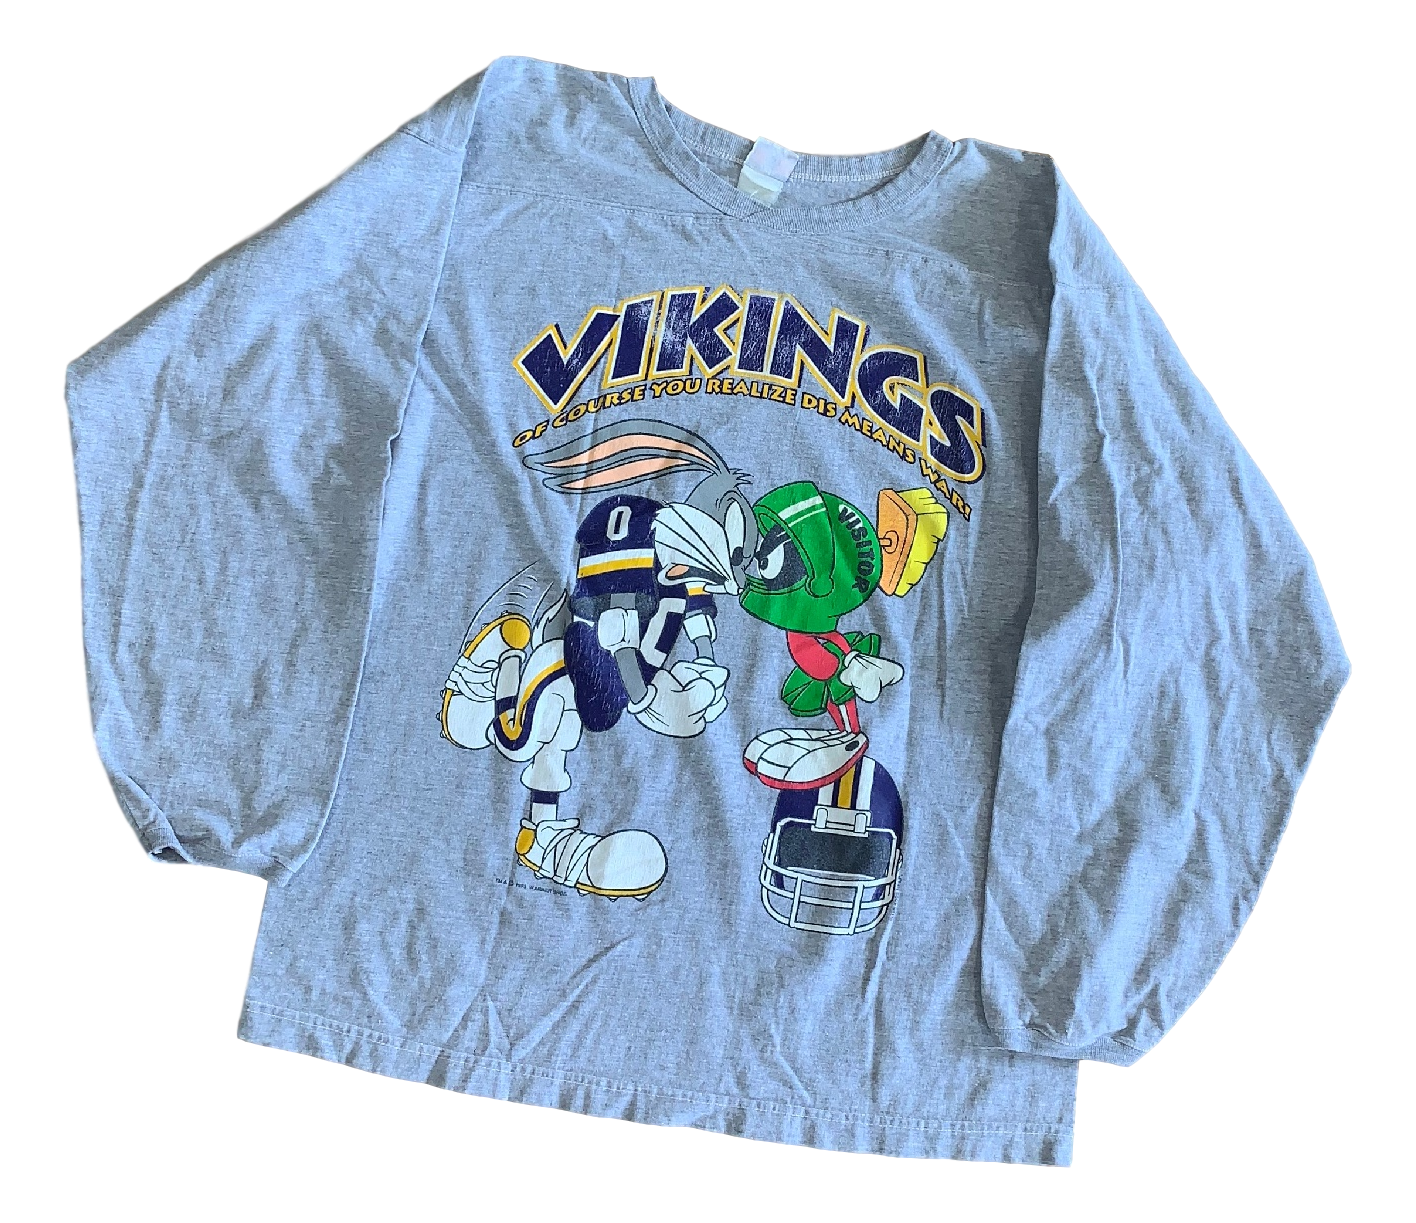 Vintage Minnesota Vikings Long Sleeve - Large